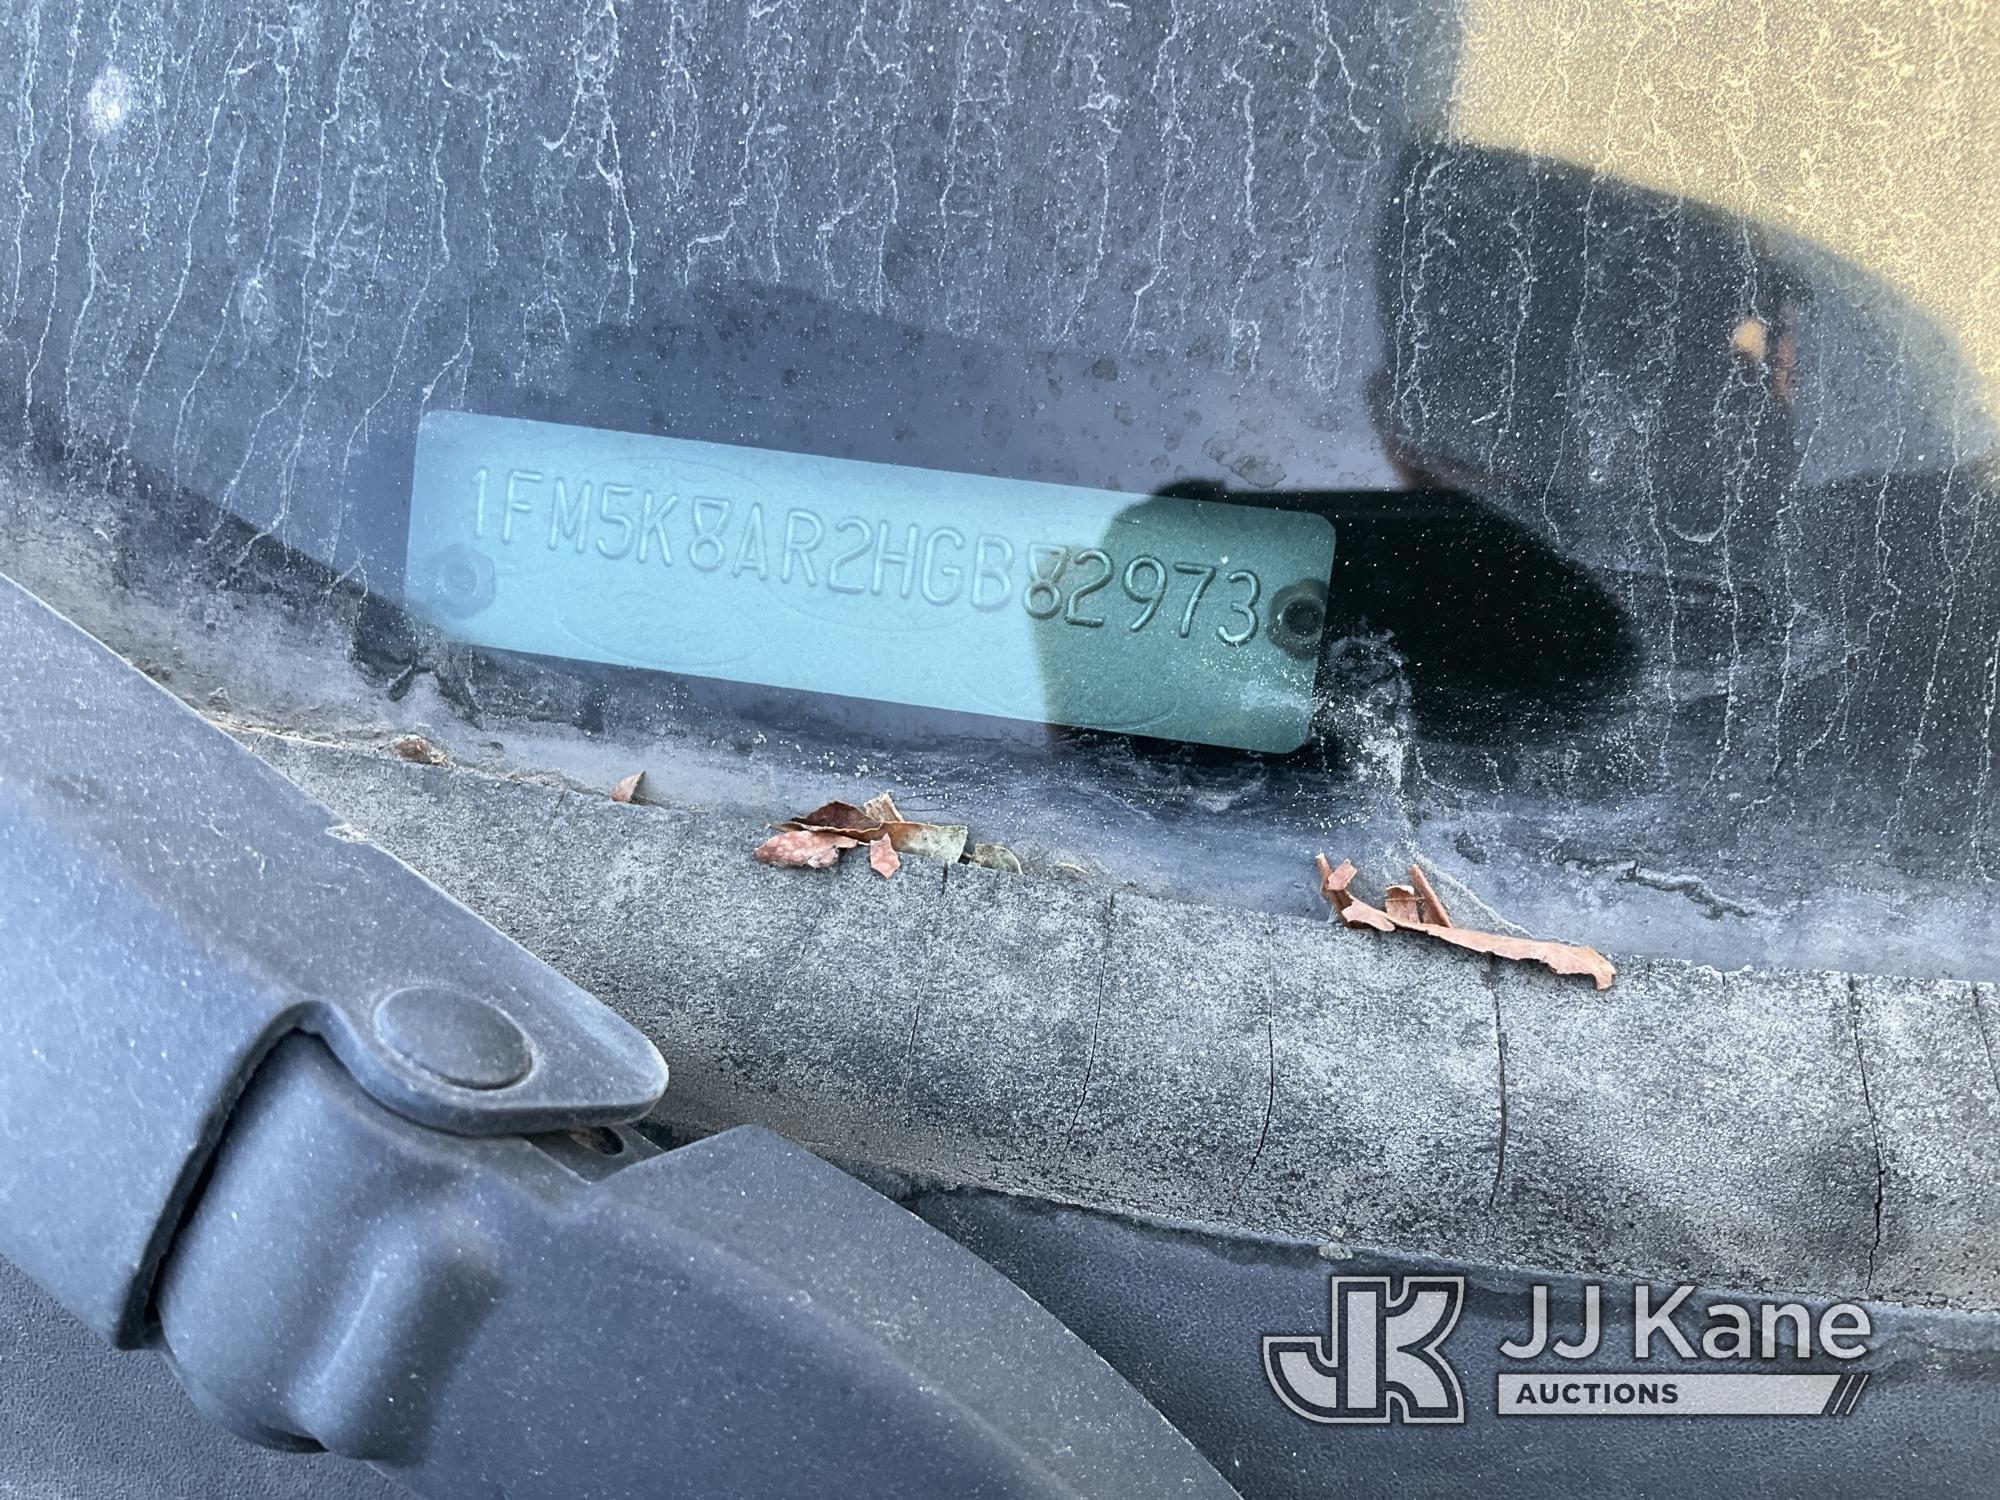 (Jurupa Valley, CA) 2017 Ford Explorer 4-Door Sport Utility Vehicle Not Running , Missing Key, Inter